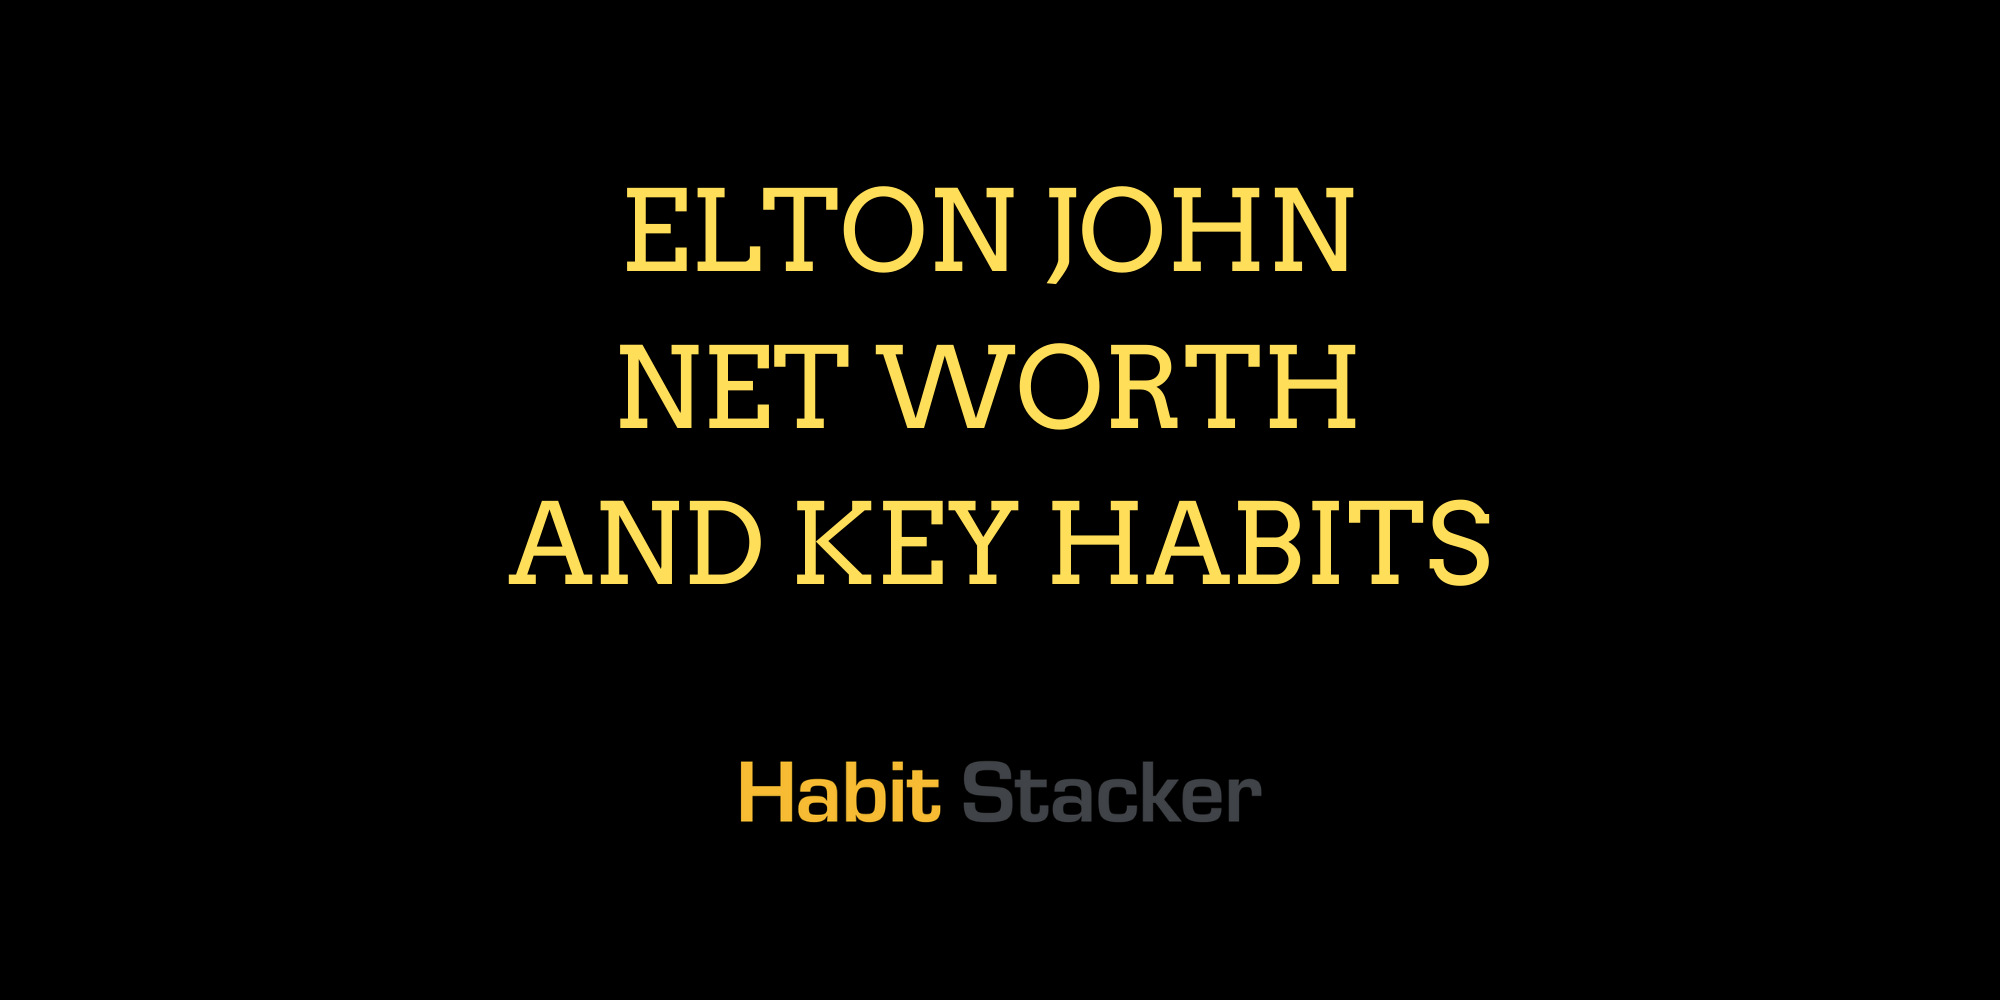 Elton John Net Worth and Key Habits (1)